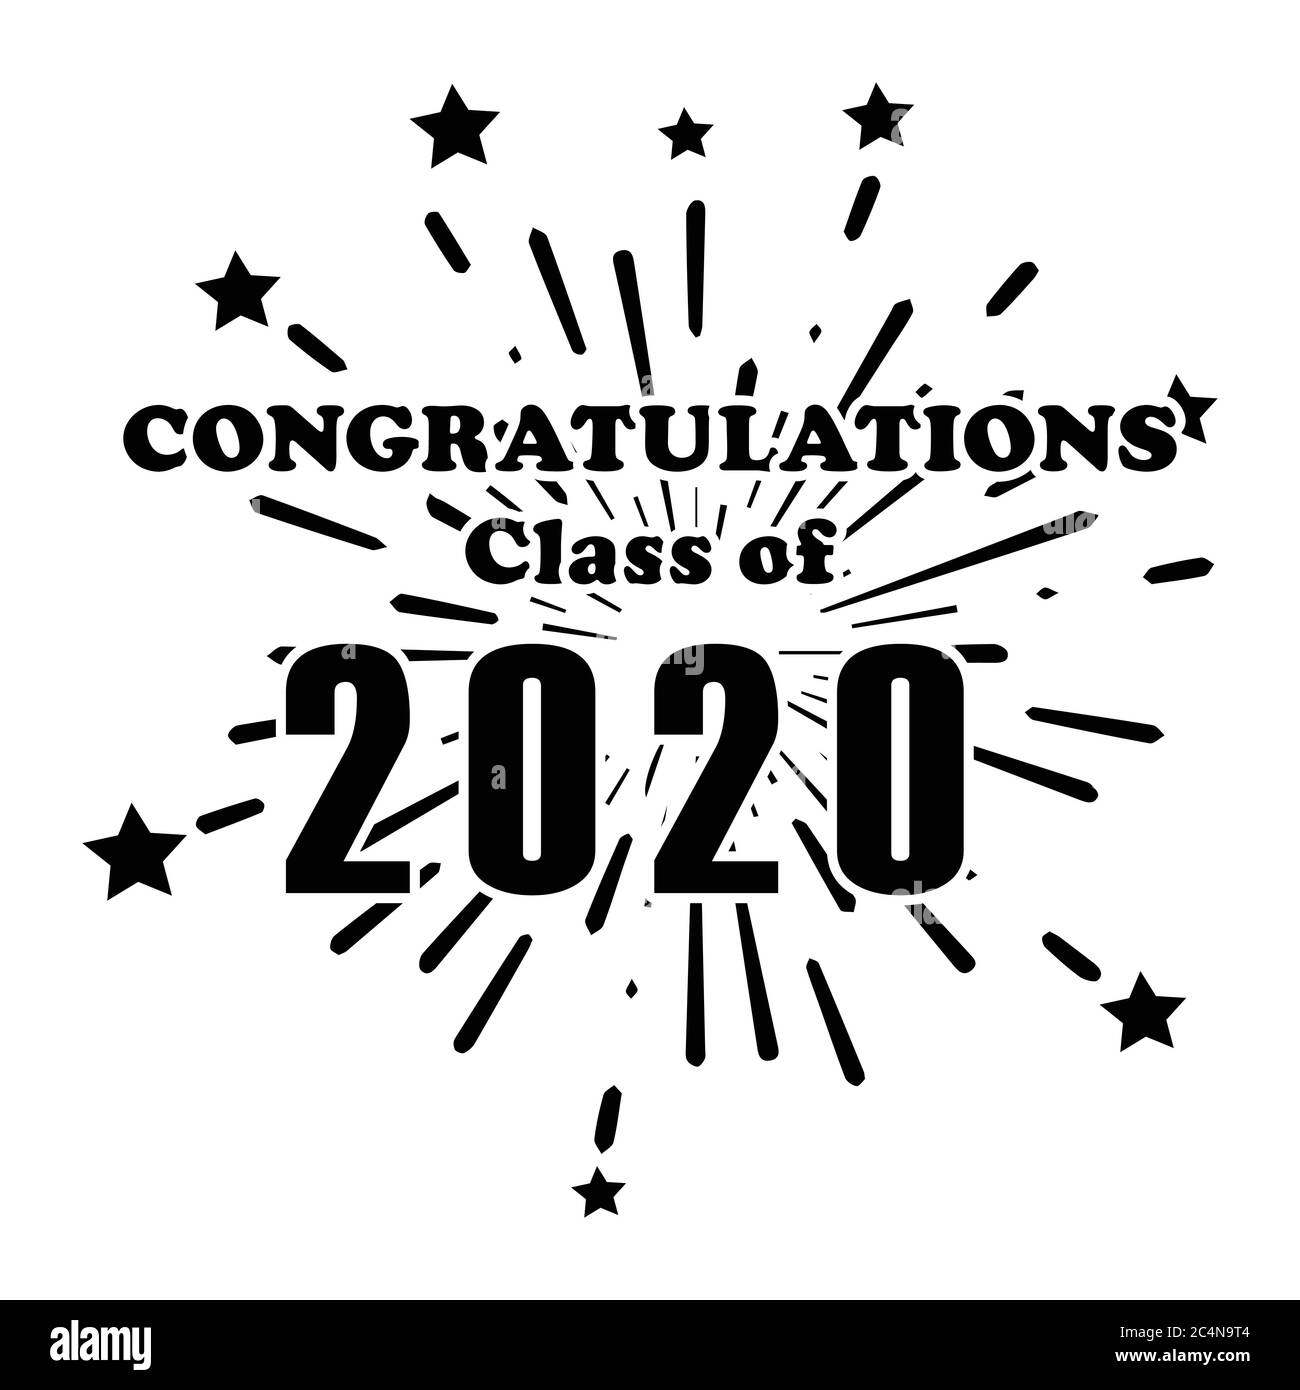 Congratulazioni Classe di 2020 Fireworks esplosione Star saluti Text Word icona. Giorno di inizio laurea liceo universitario Diploma De Illustrazione Vettoriale